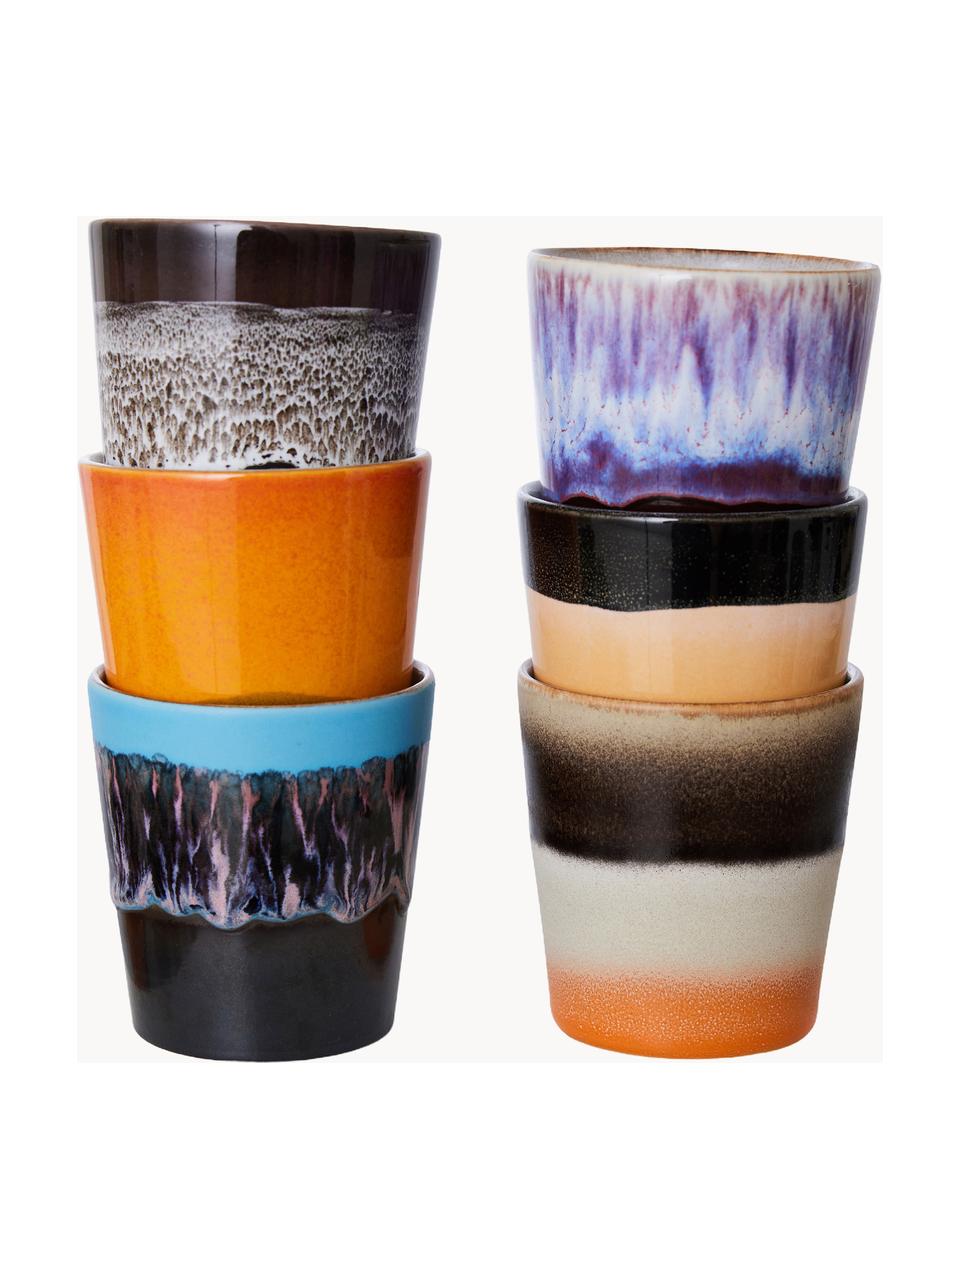 Sada ručně malovaných keramických pohárků s reaktivní glazurou 70's, 6 dílů, Keramika, Design 3, Ø 8 cm, V 8 cm, 180 ml